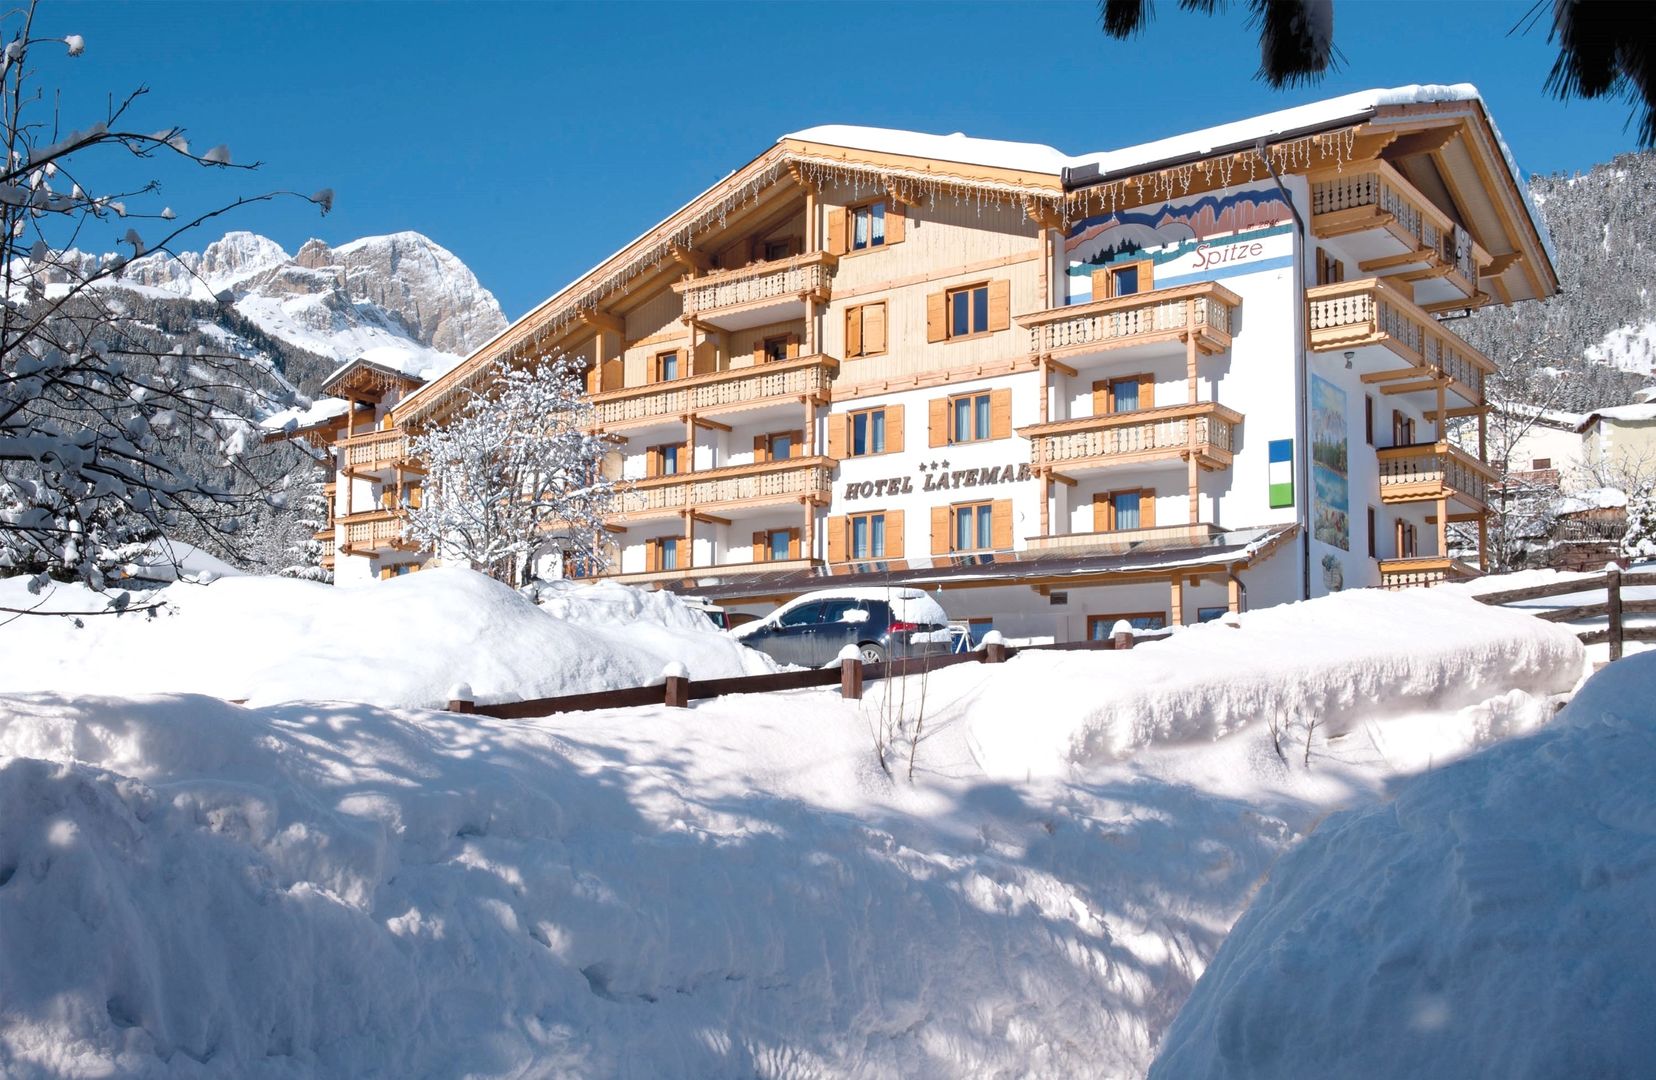 Meer info over Hotel Latemar  bij Wintertrex